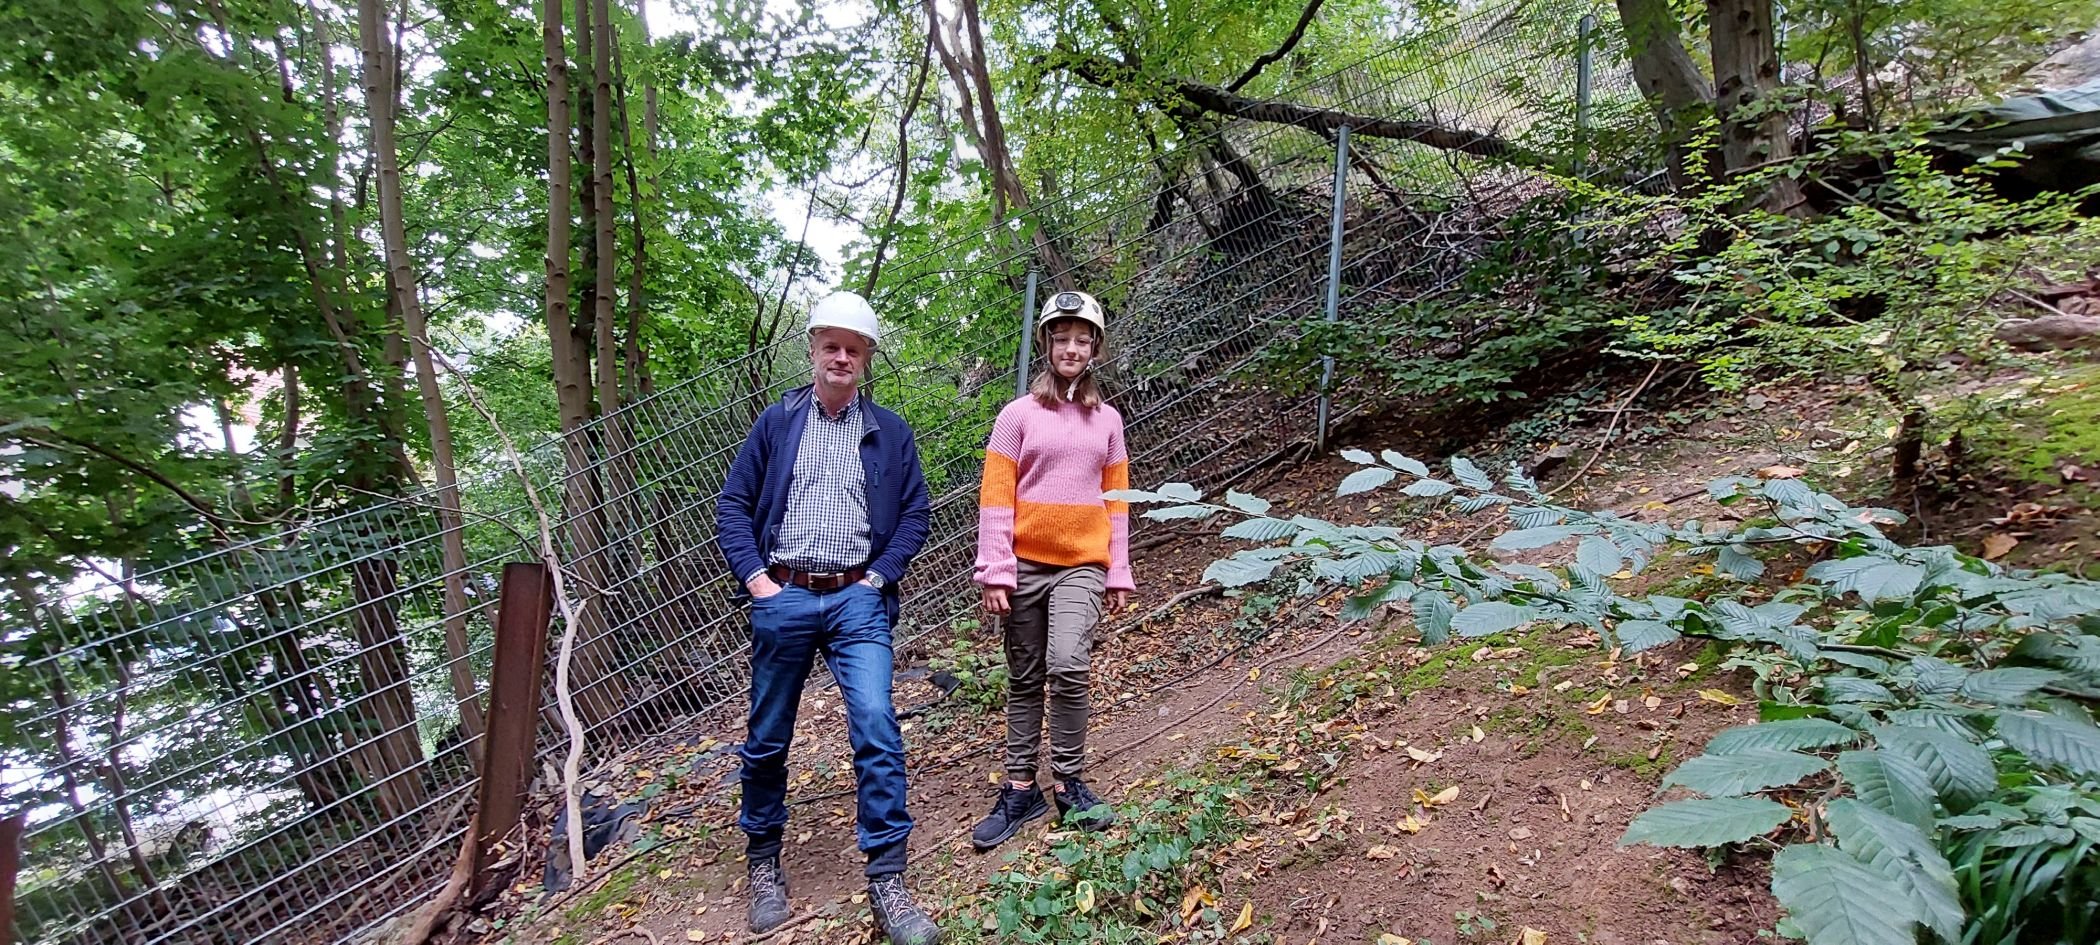 Prof. Michael Baales und Stella bei der Ausgrabung an der Blätterhöhle. Foto: LWL-Archäologie/S. Görtz